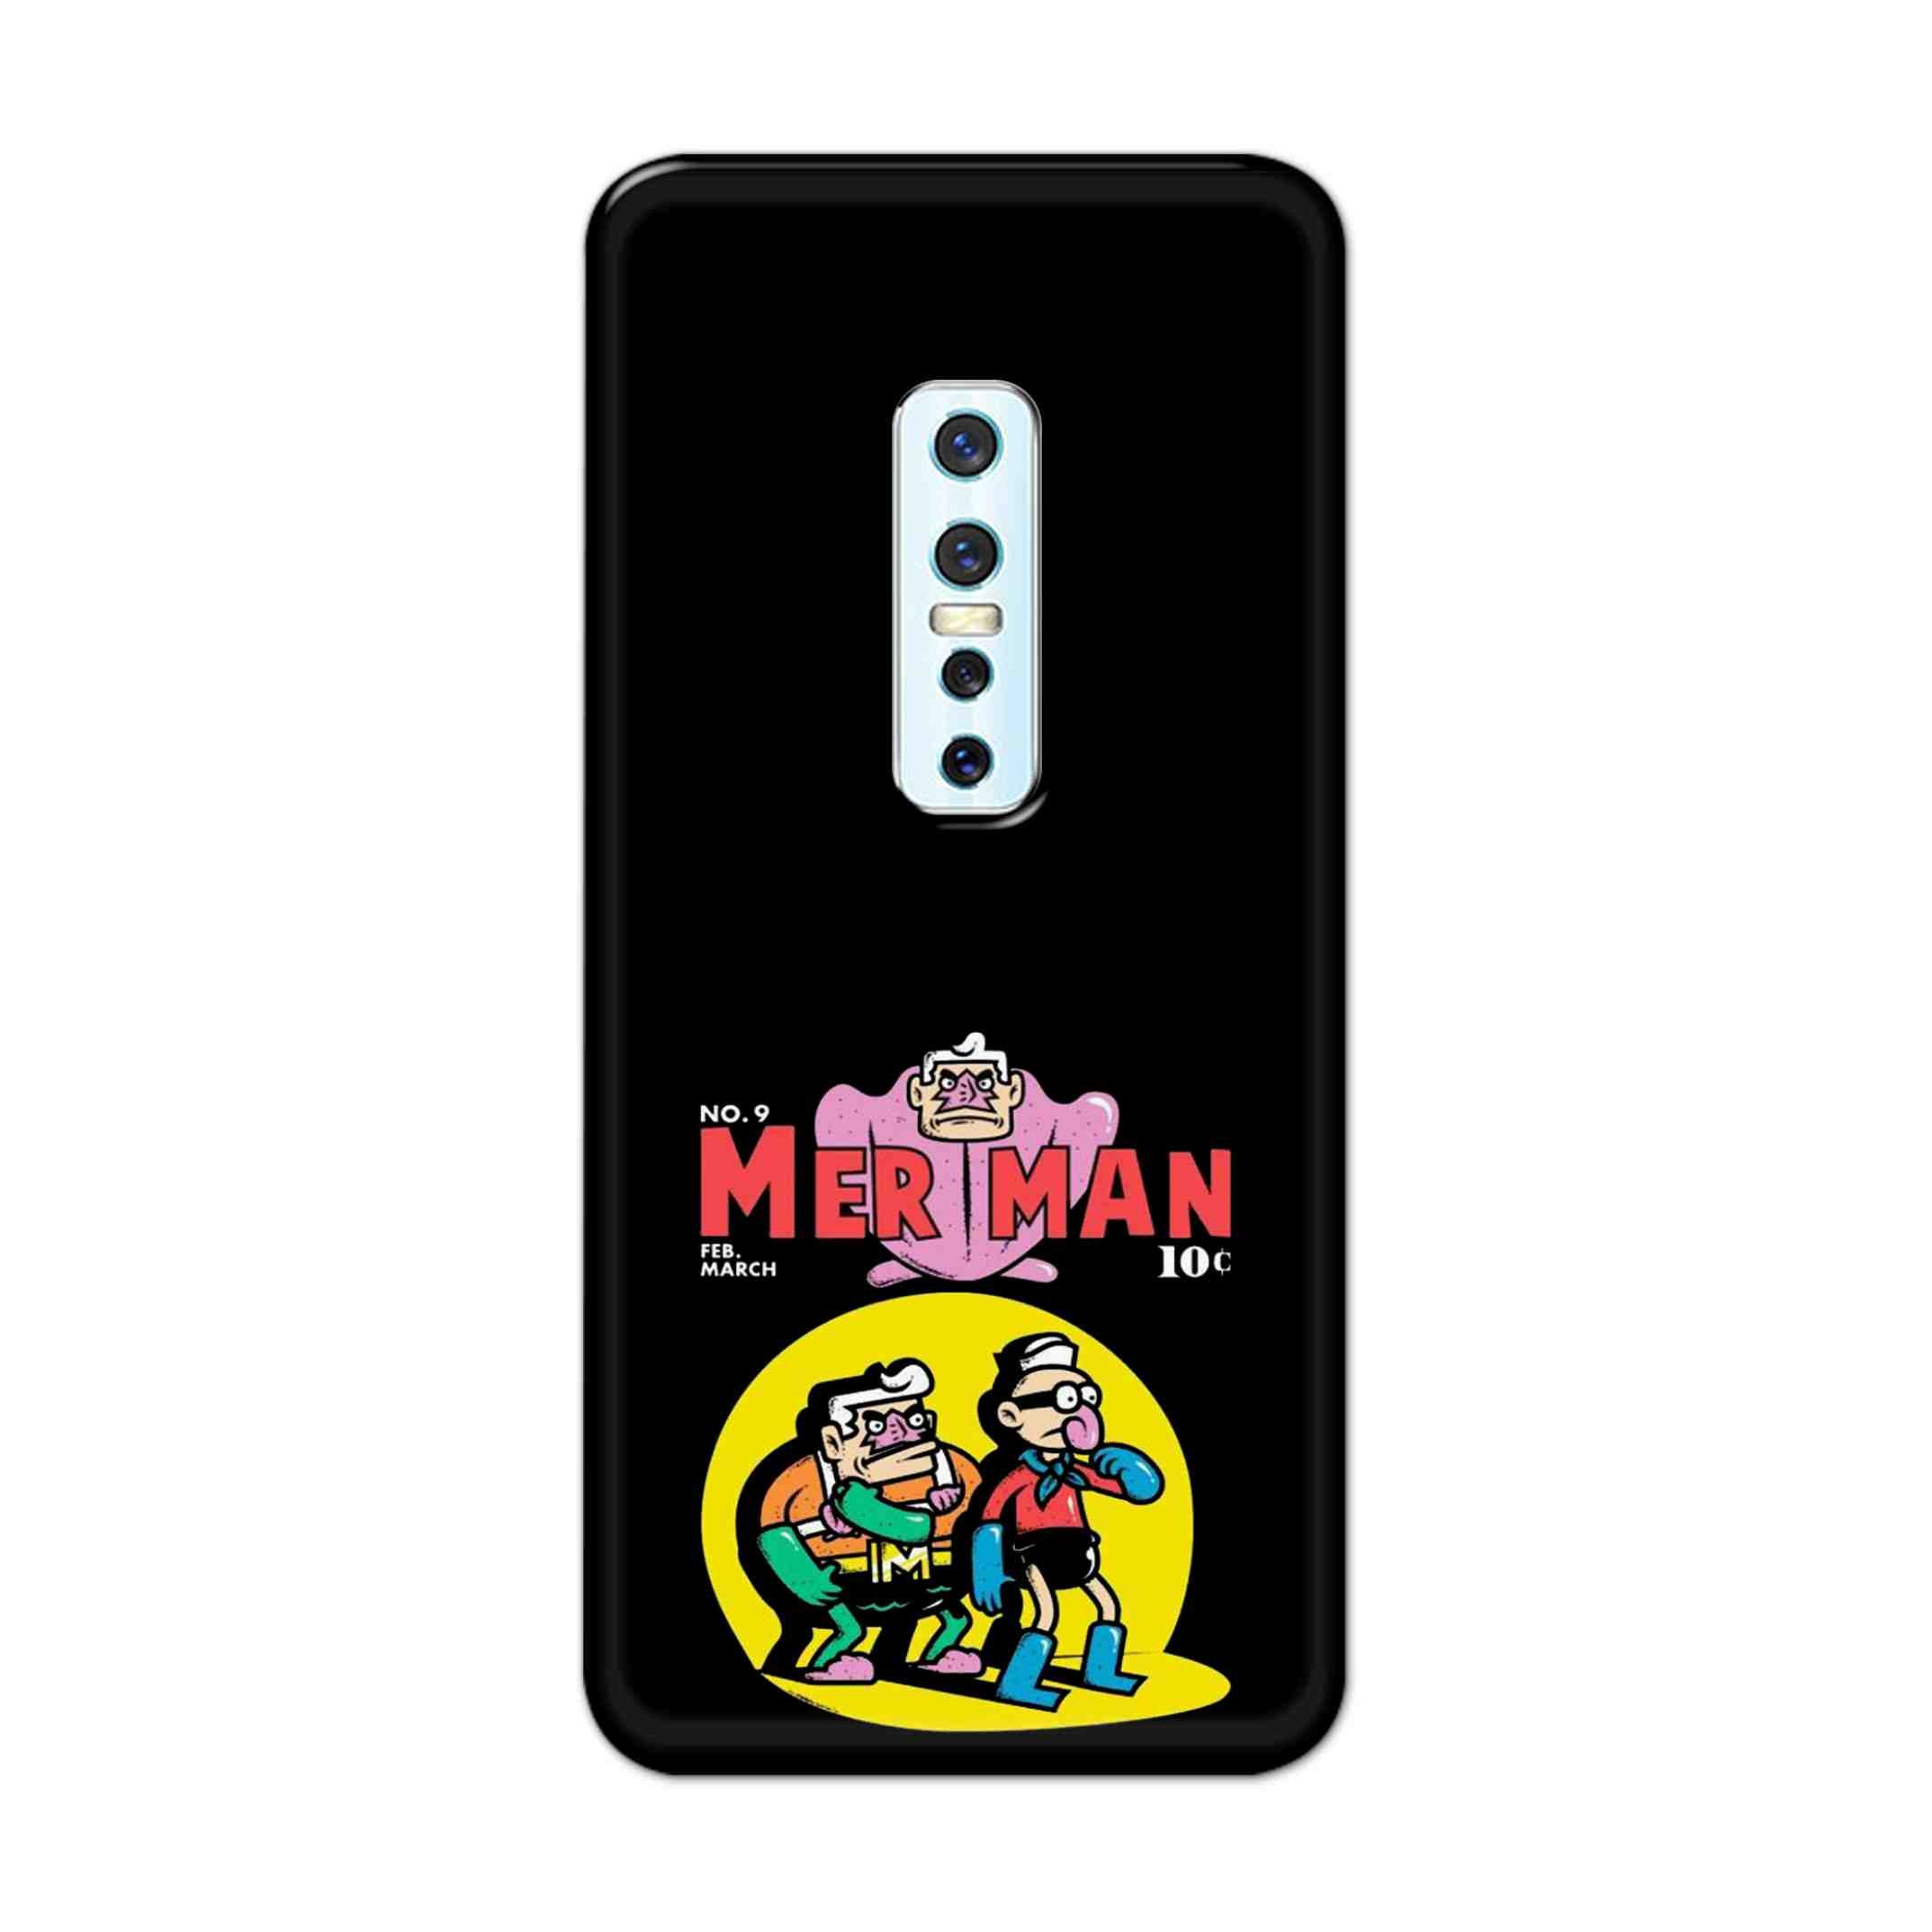 Buy Merman Hard Back Mobile Phone Case Cover For Vivo V17 Pro Online